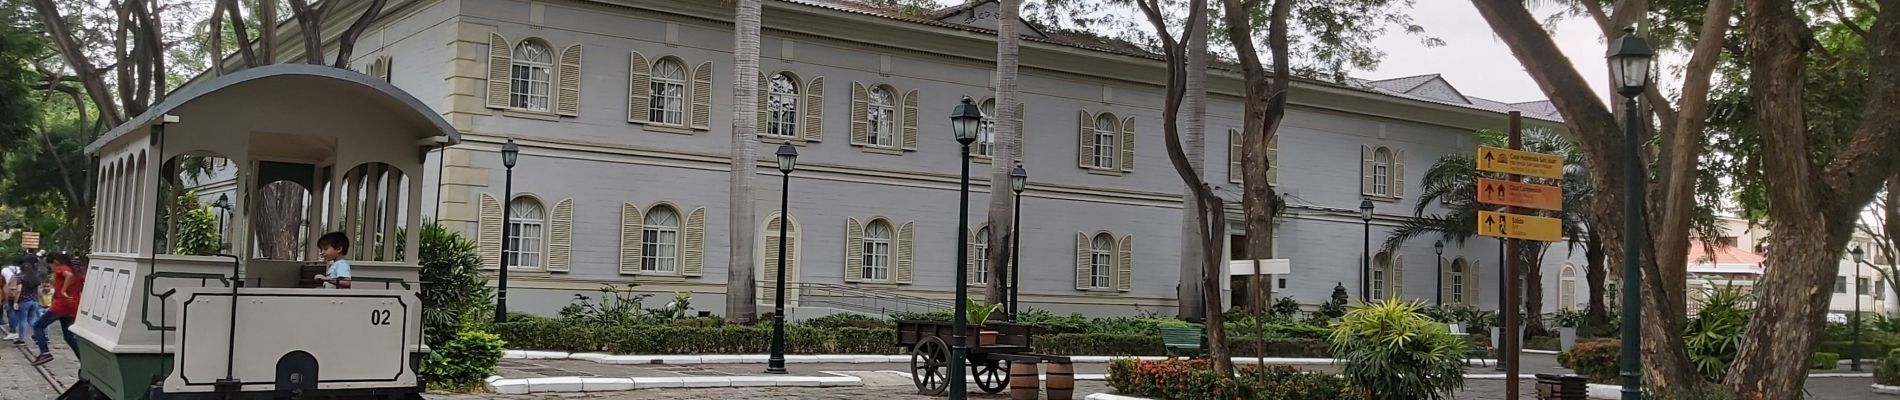 Excursión Senderismo Samborondón - Parque histórico de Guayaquil - Photo